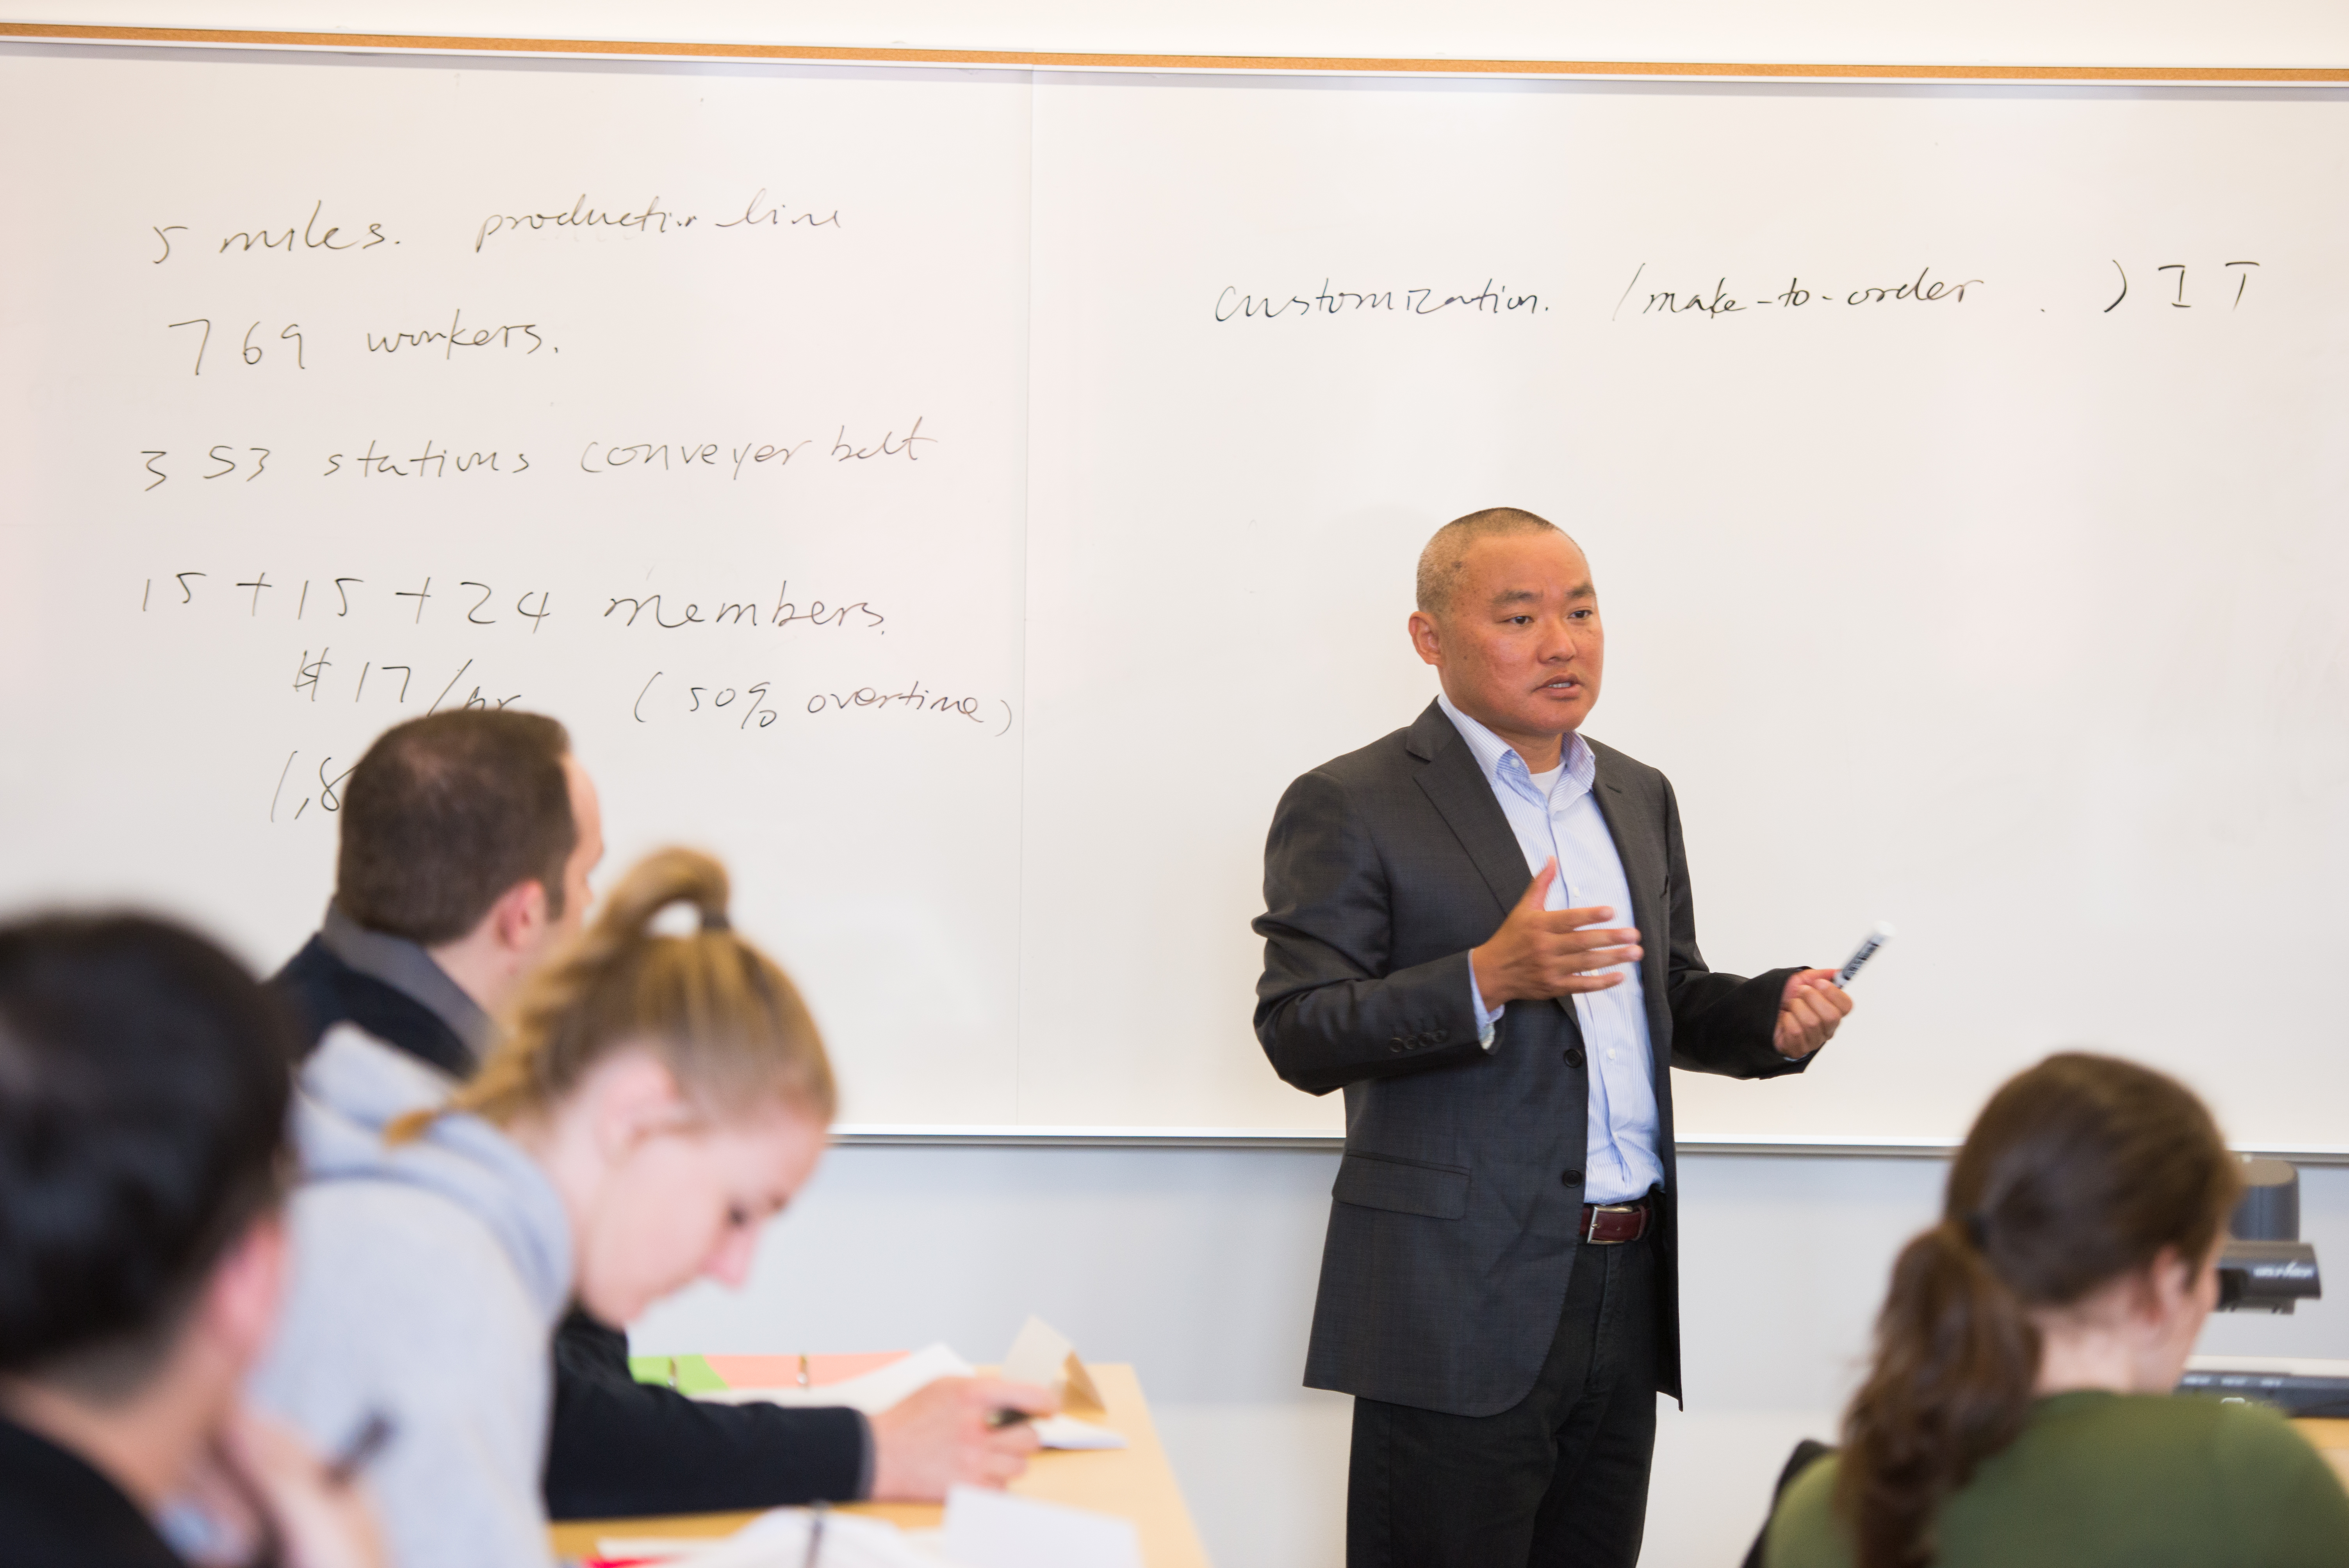 Wu teaching supply chain management